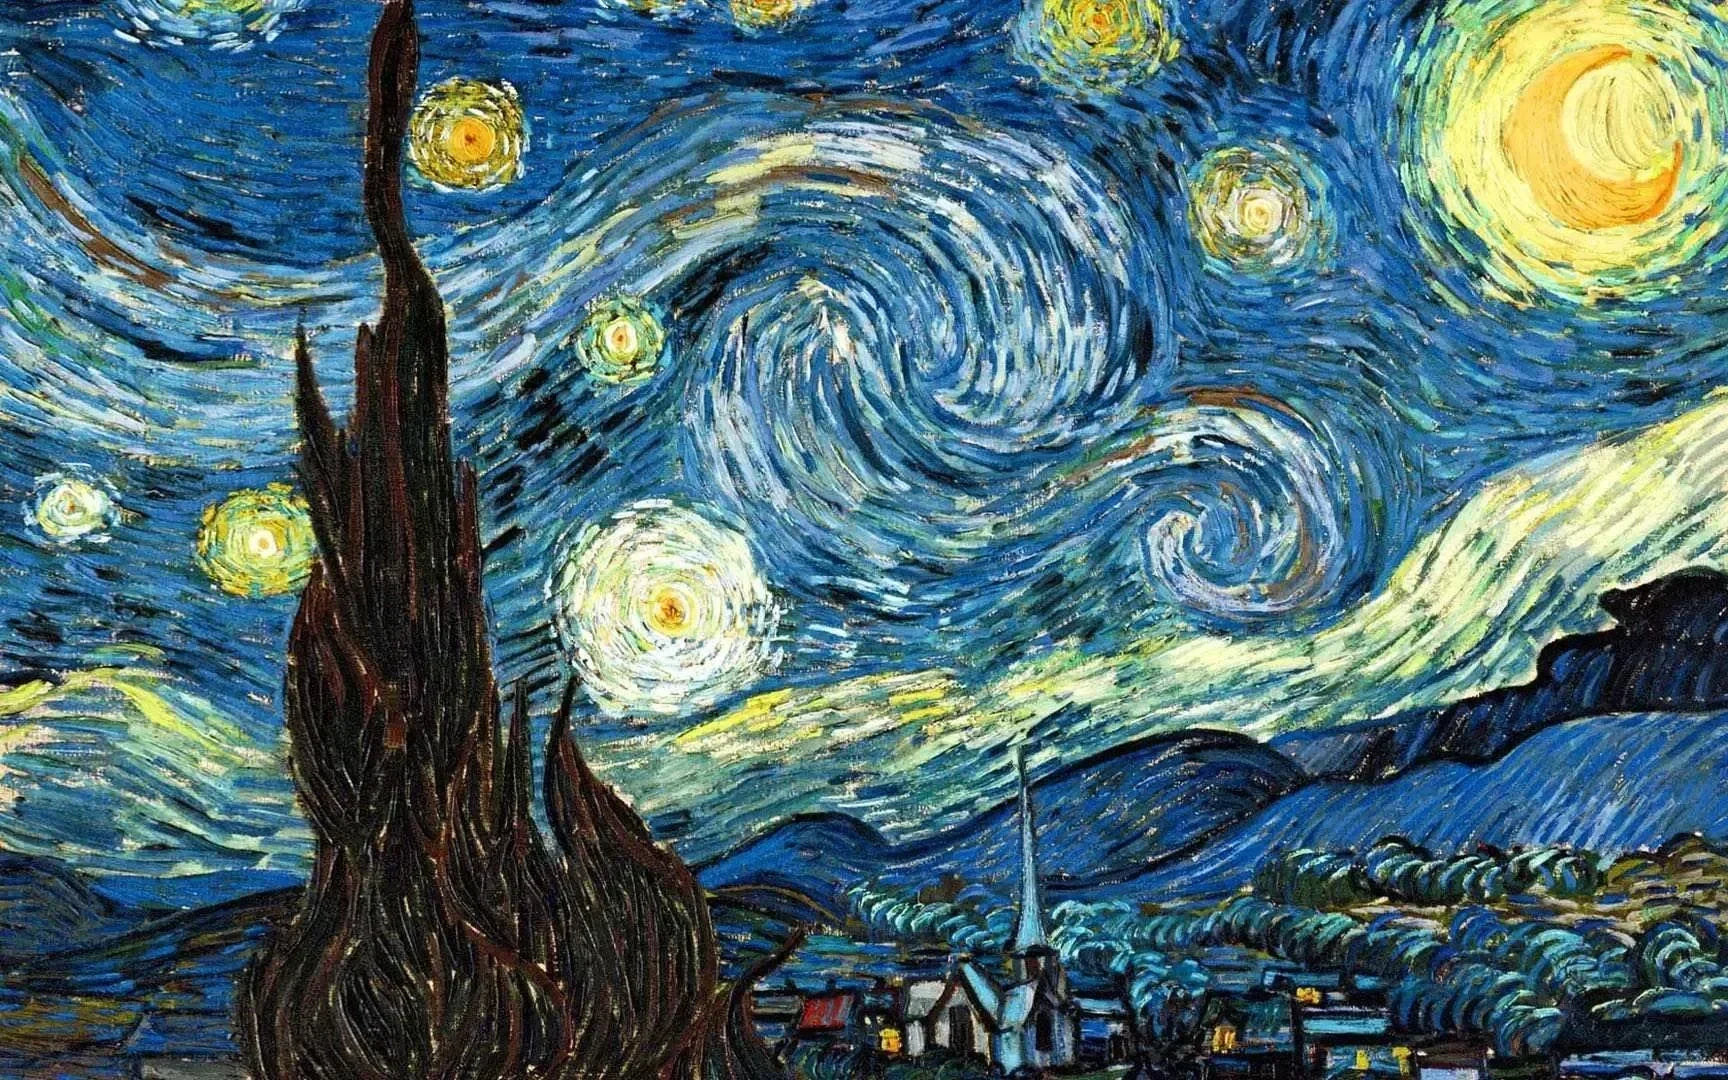 Noche Estrellada de Van Gogh - kit premium de pintura diamante